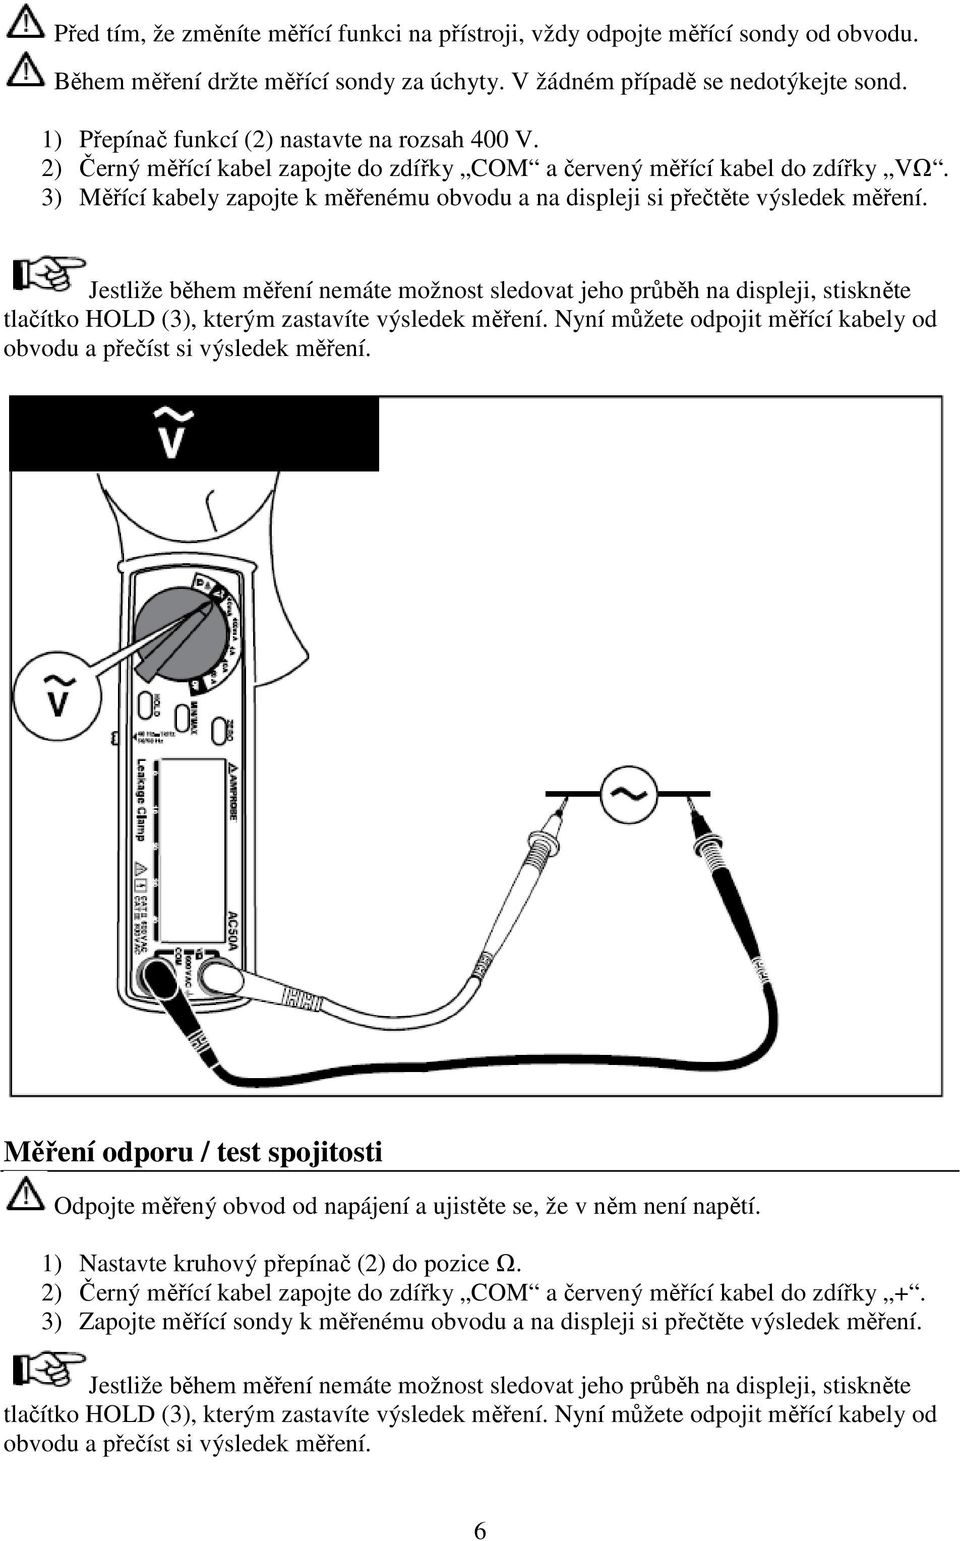 3) Měřící kabely zapojte k měřenému obvodu a na displeji si přečtěte výsledek měření.